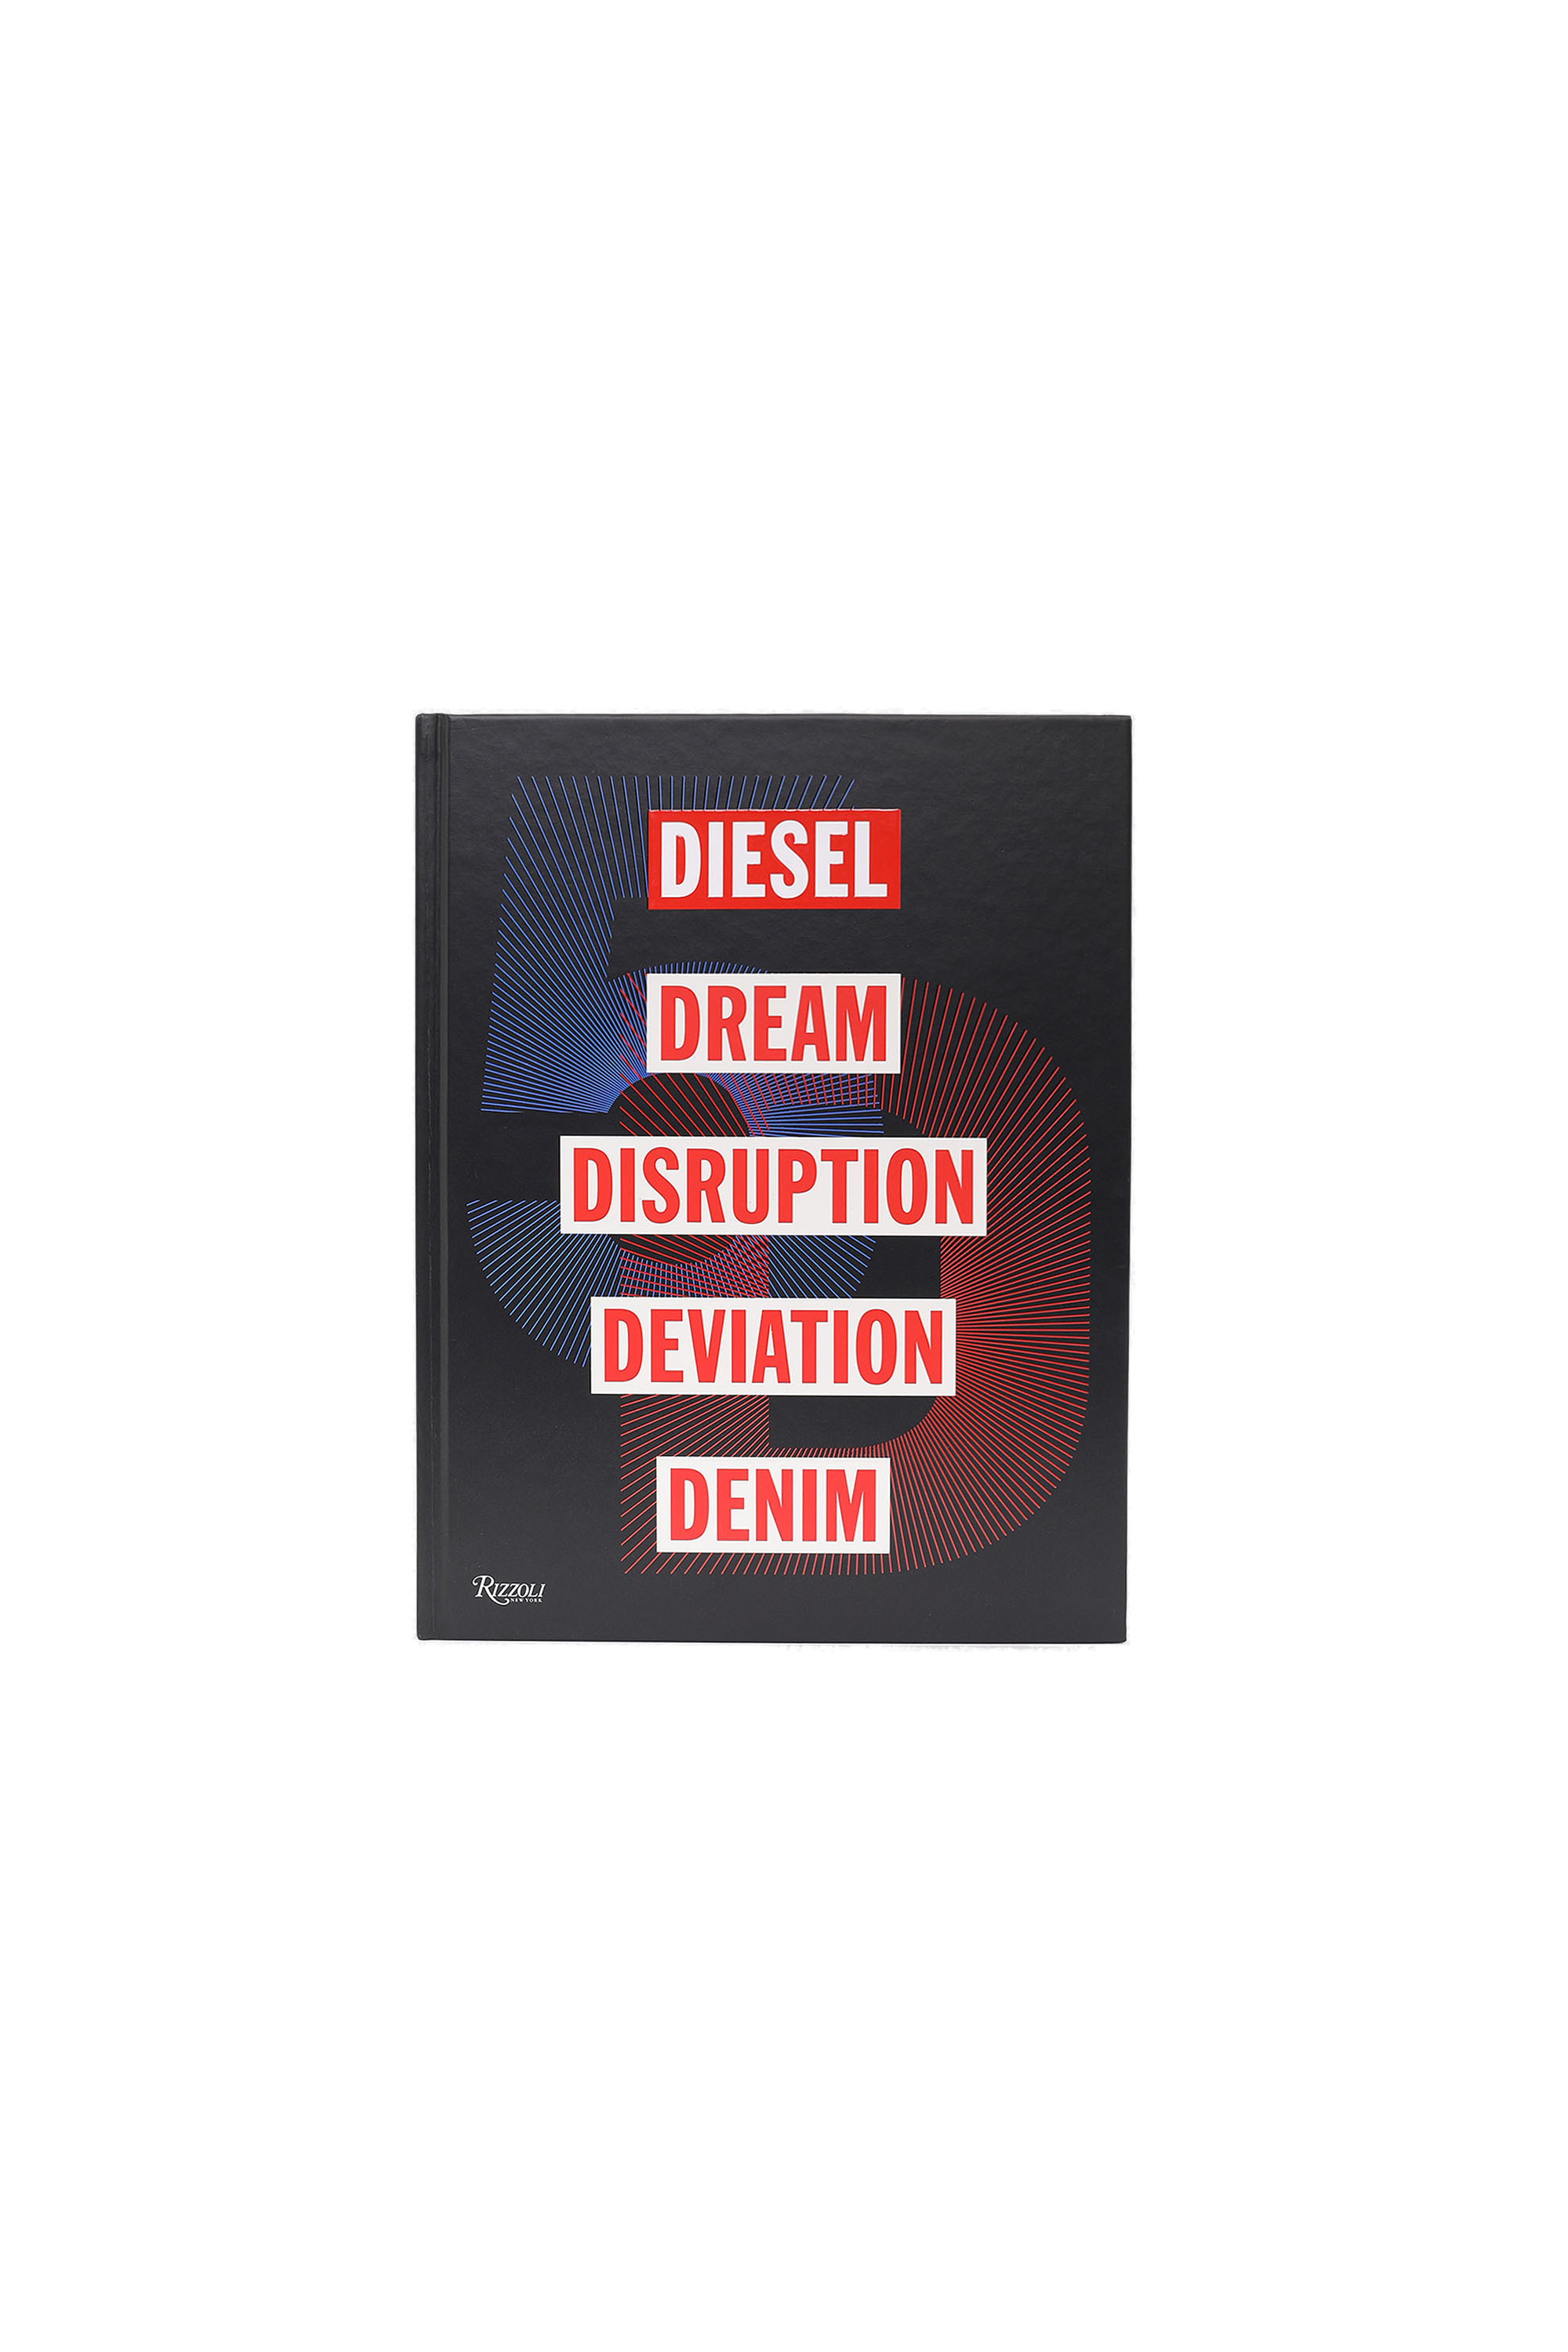 5D Diesel Dream Disruption Deviation Denim